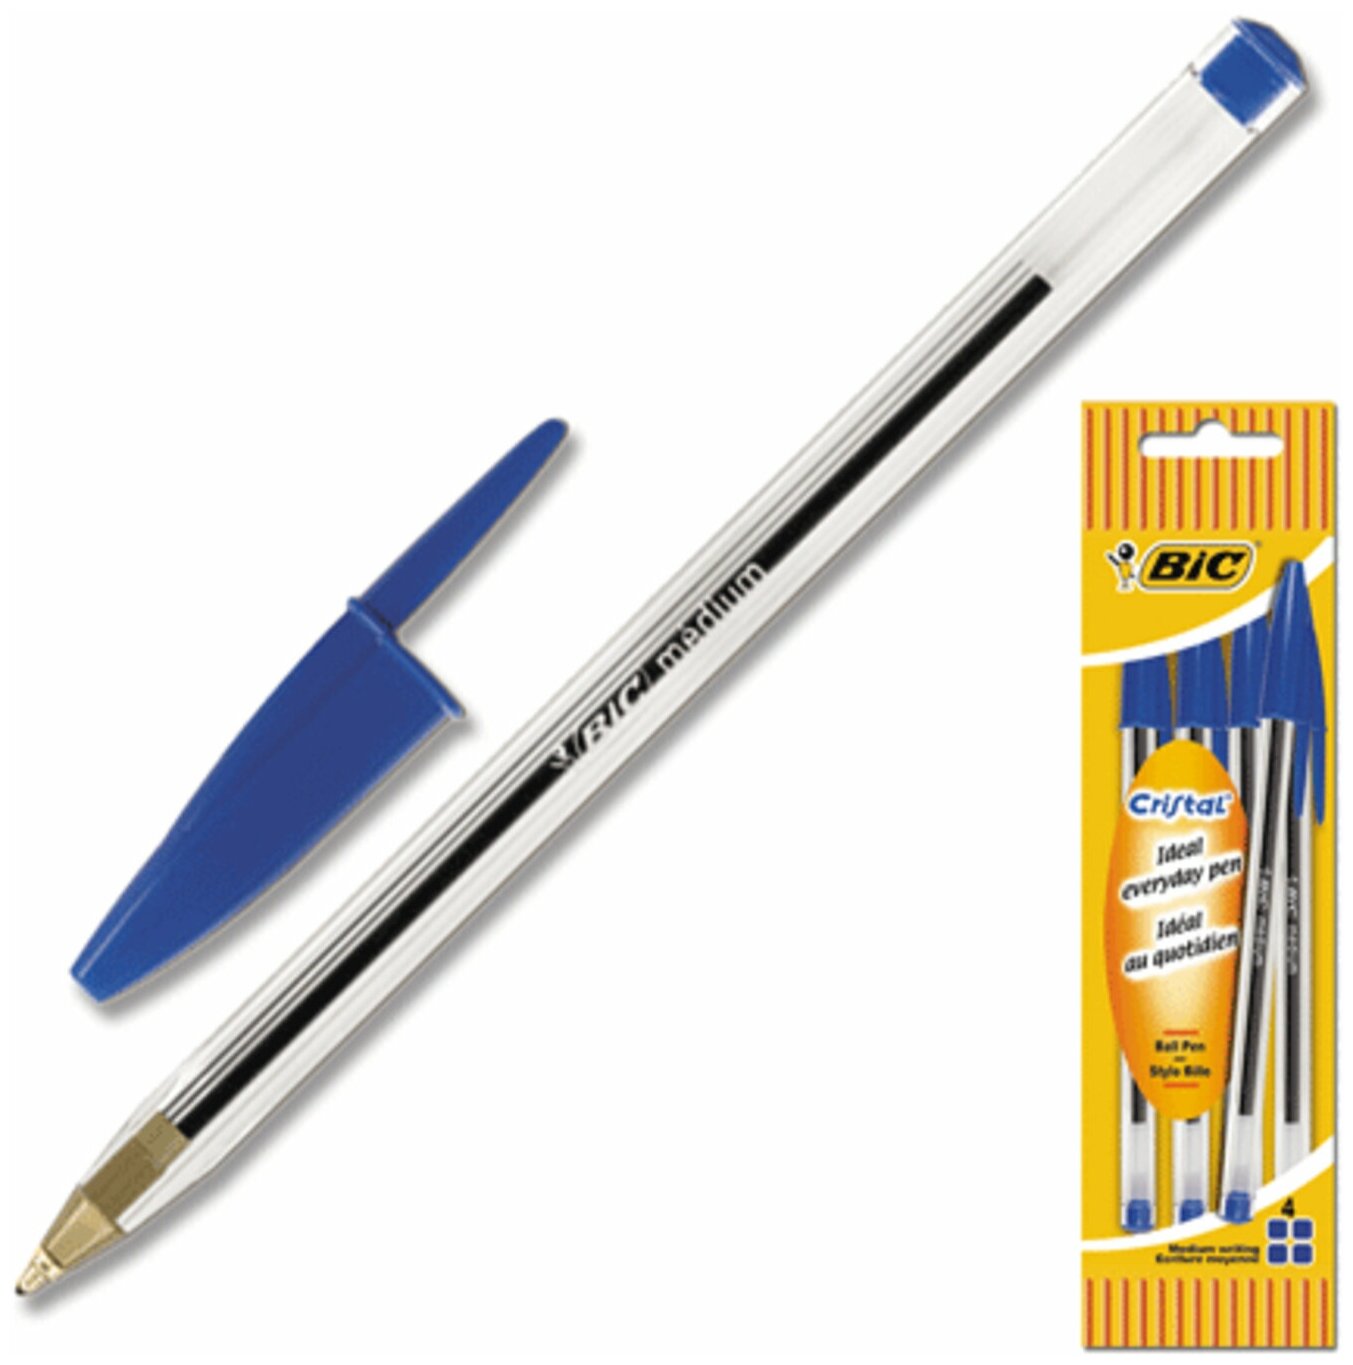 Ручки шариковые BIC набор 4 шт, Cristal original, пластиковая упаковка с европодвесом, синие